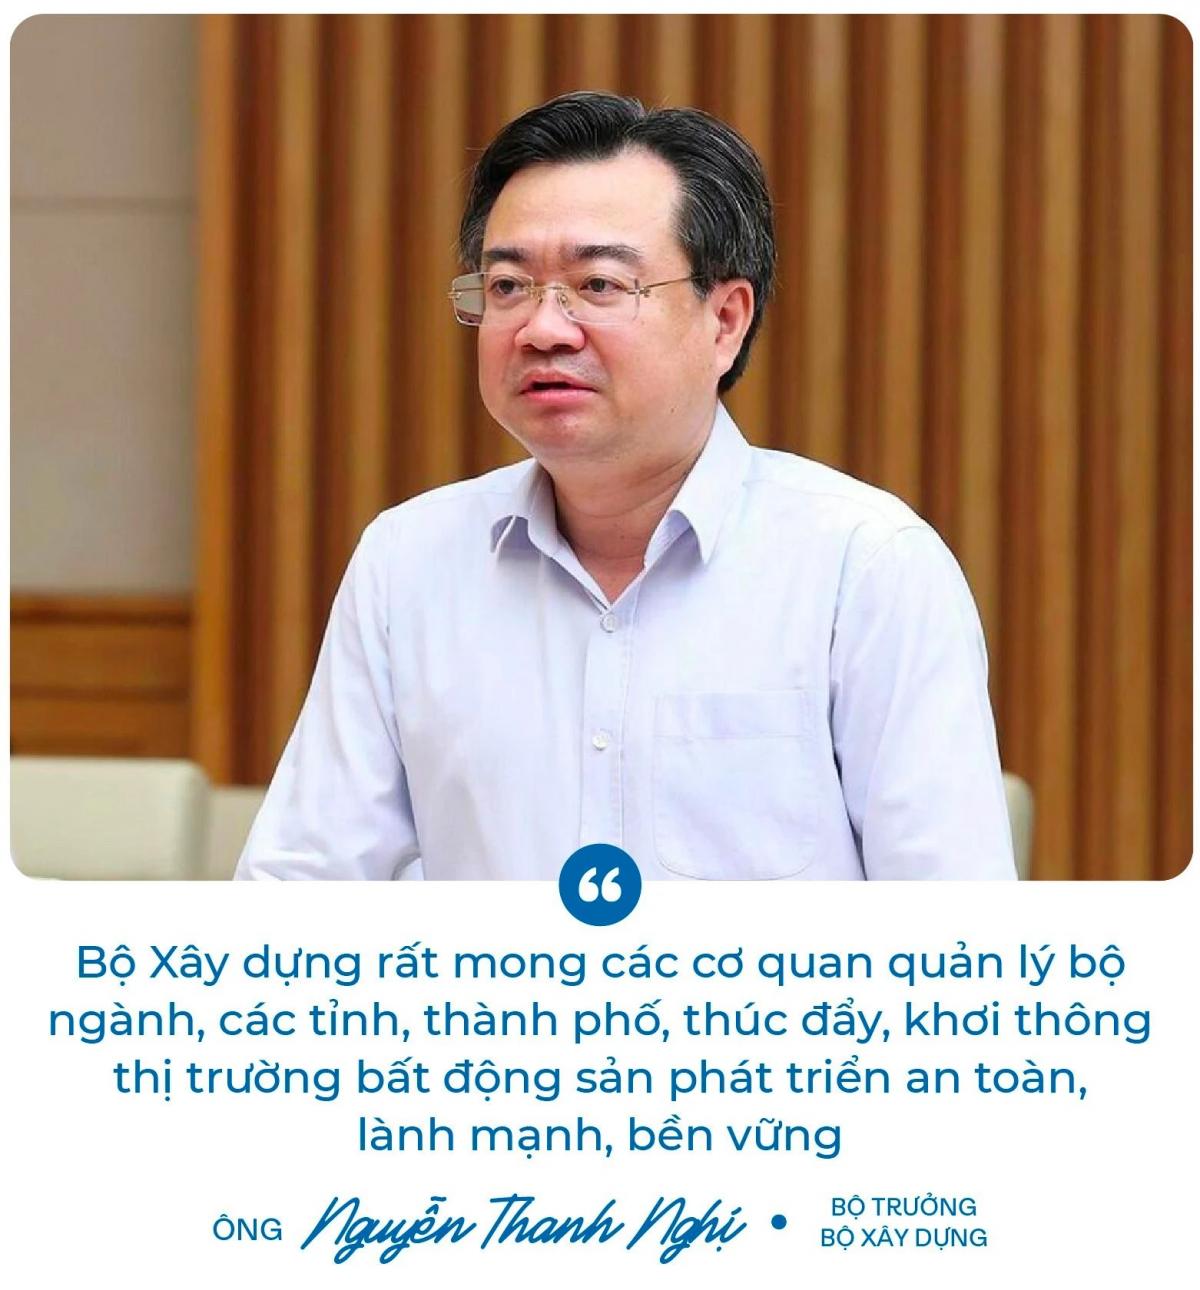 Ông Nguyễn Thanh Nghĩa